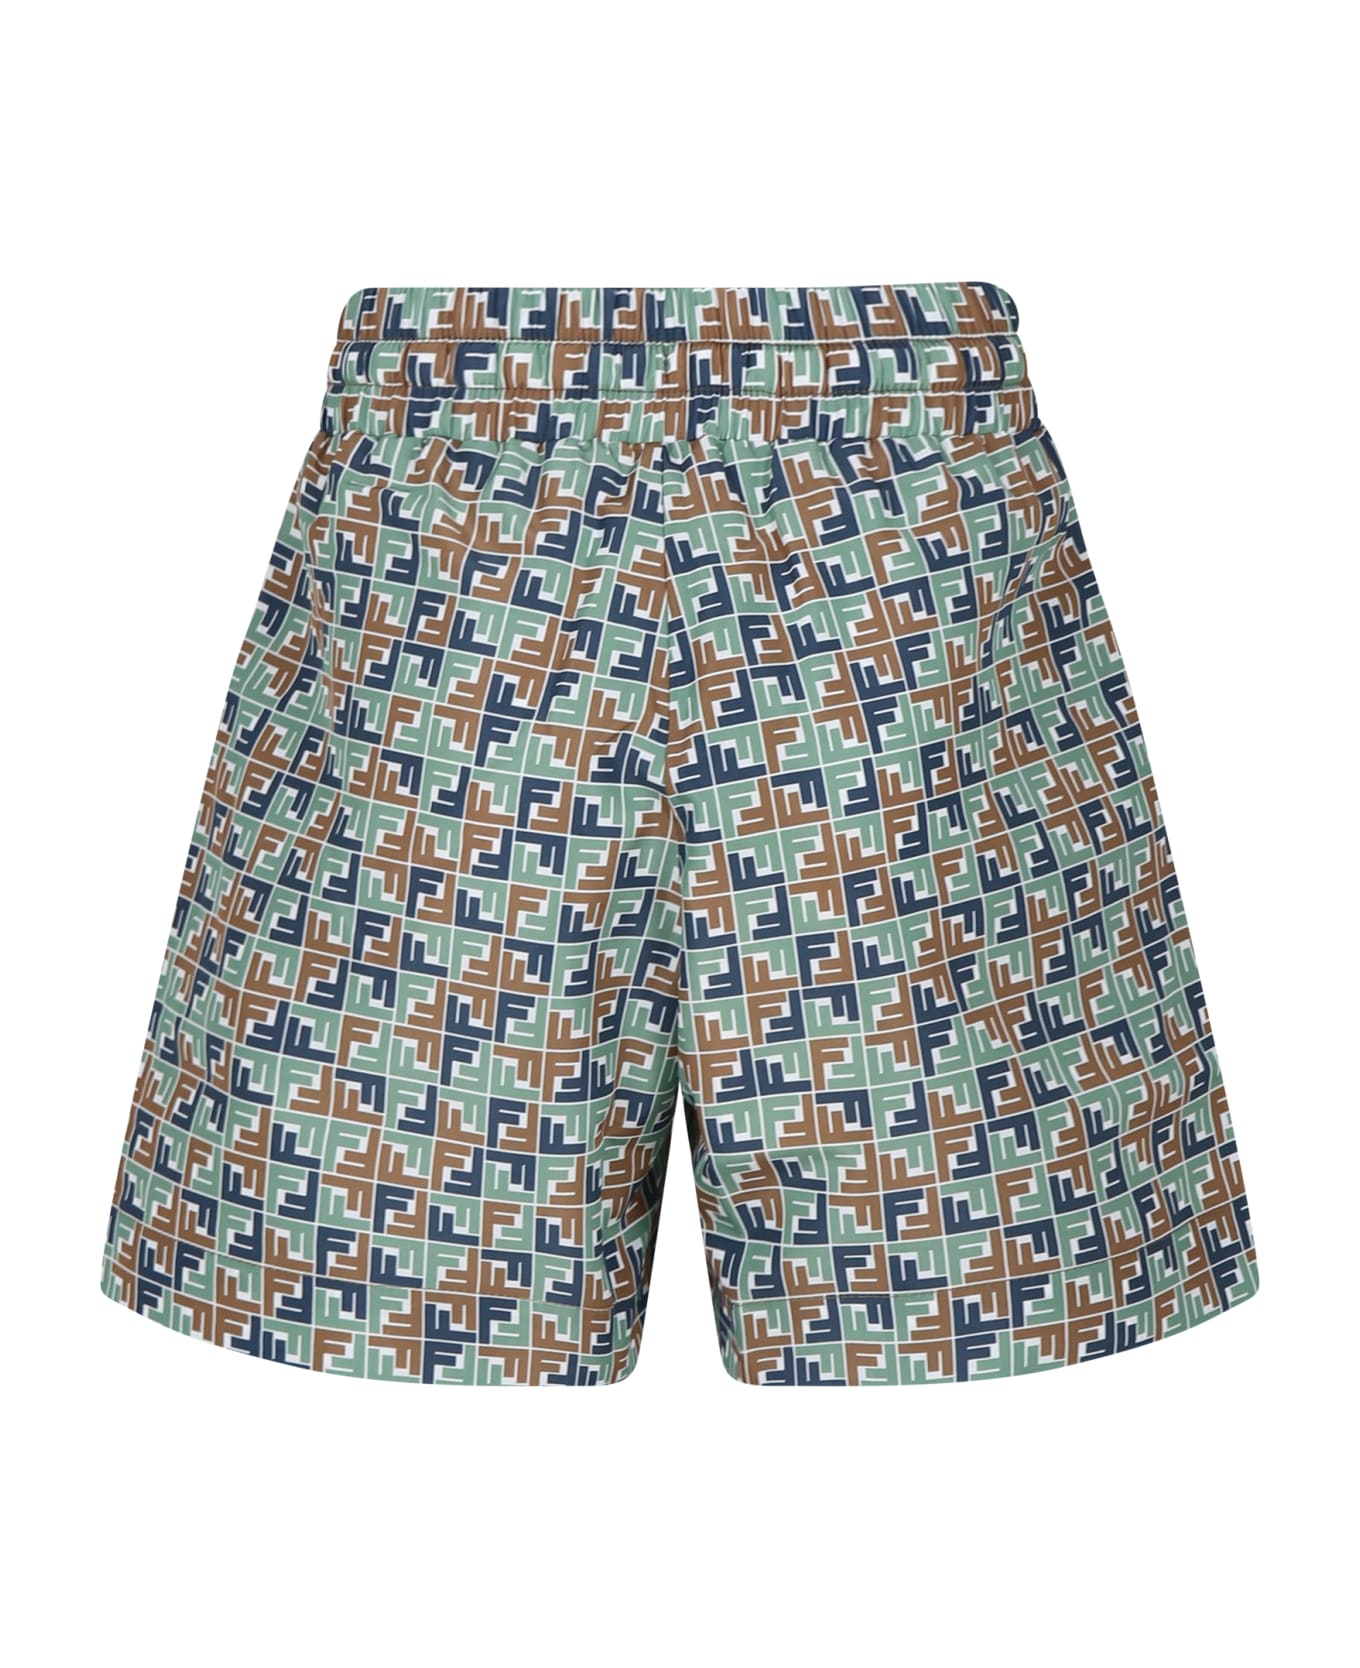 Fendi Multicolor Swim Shorts For Boy With Iconic Ff - Marrone 水着